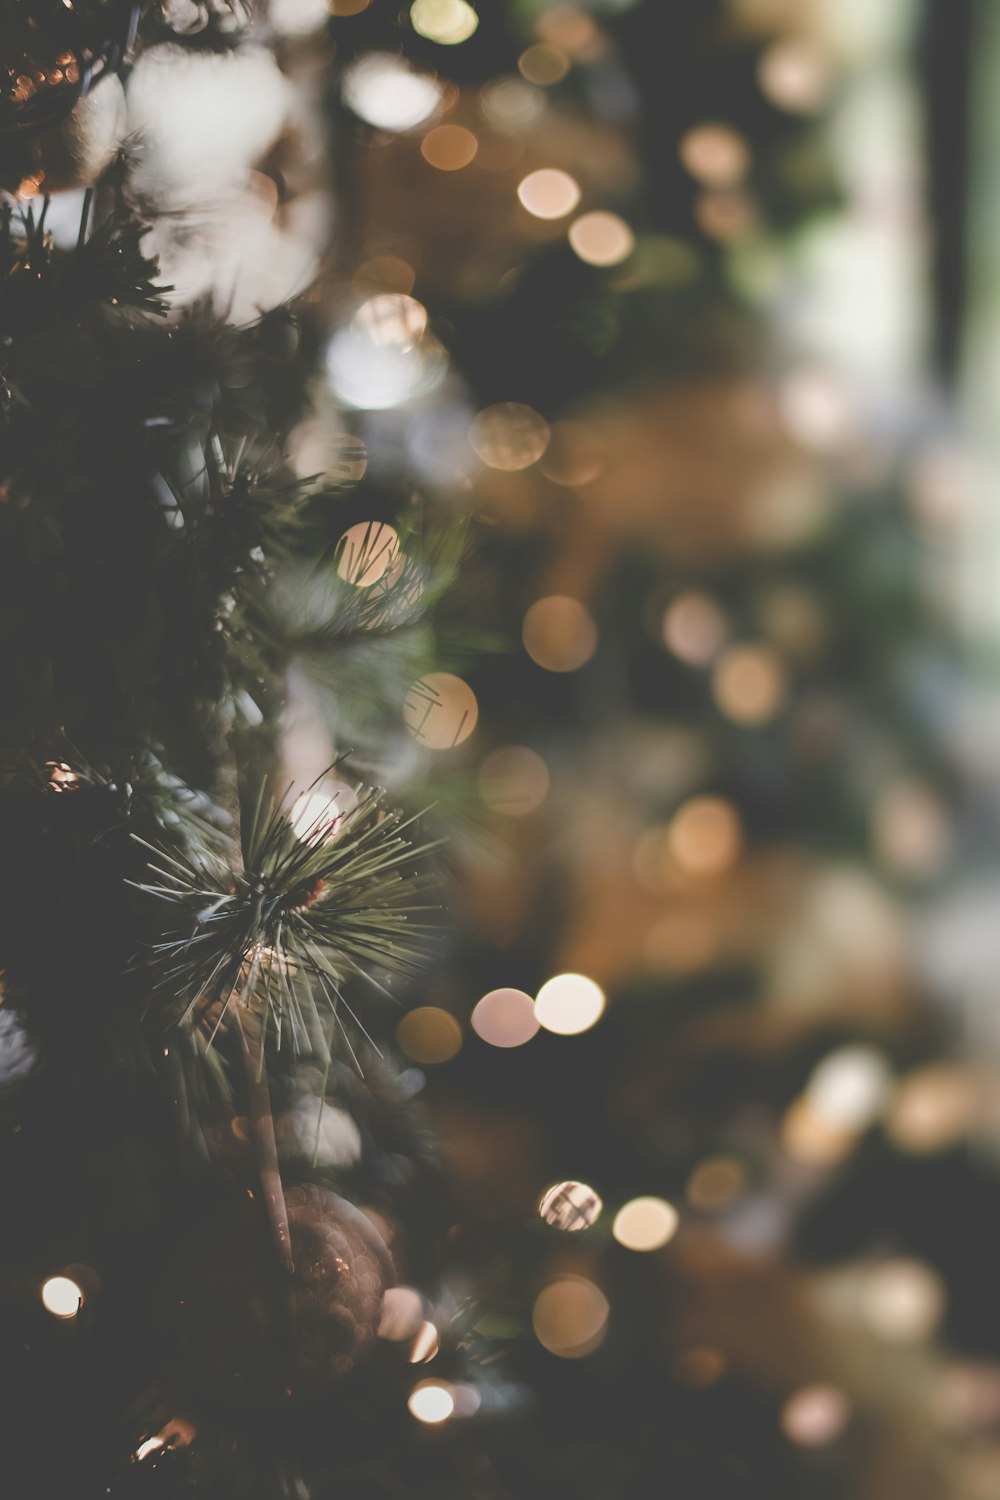 Hãy chọn ngay ảnh gần của cây thông Noel với nền mờ miễn phí để tô điểm cho màn hình của bạn trong mùa lễ hội. Tận hưởng những hình ảnh độ phân giải cao và chất lượng tuyệt vời, đem tới cho bạn trải nghiệm tuyệt vời.